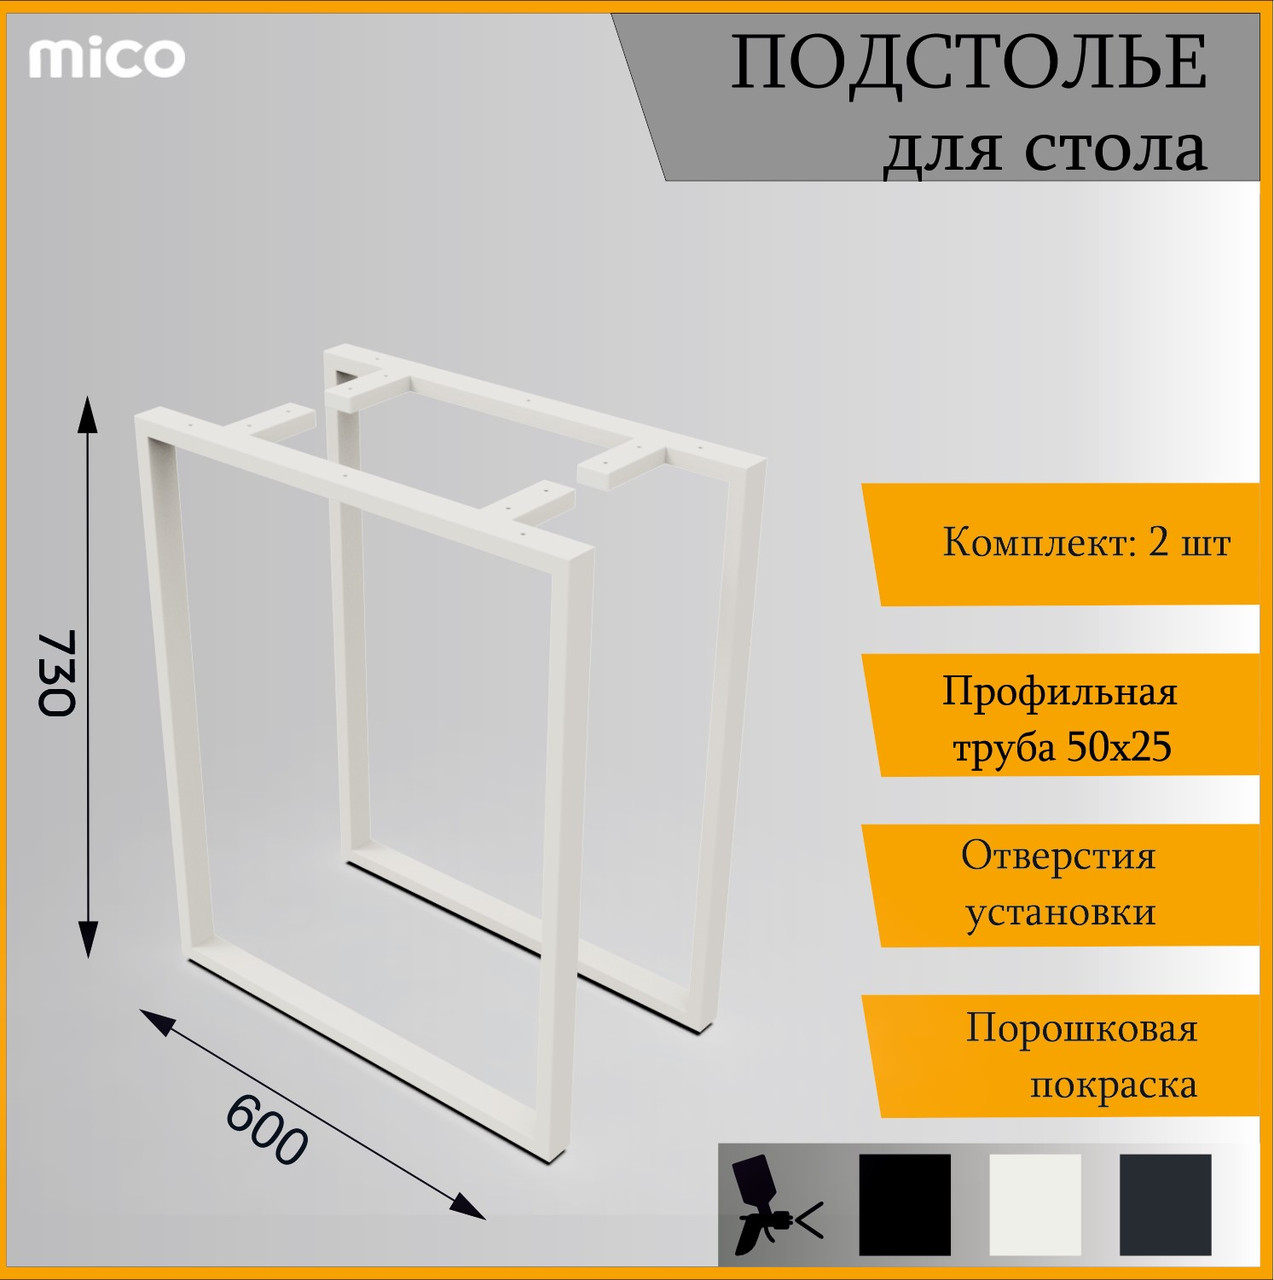 Подстолье для столa Квадрат Белый Лофт 600x730 / 50x25 Премиум матовый / муар | Mico